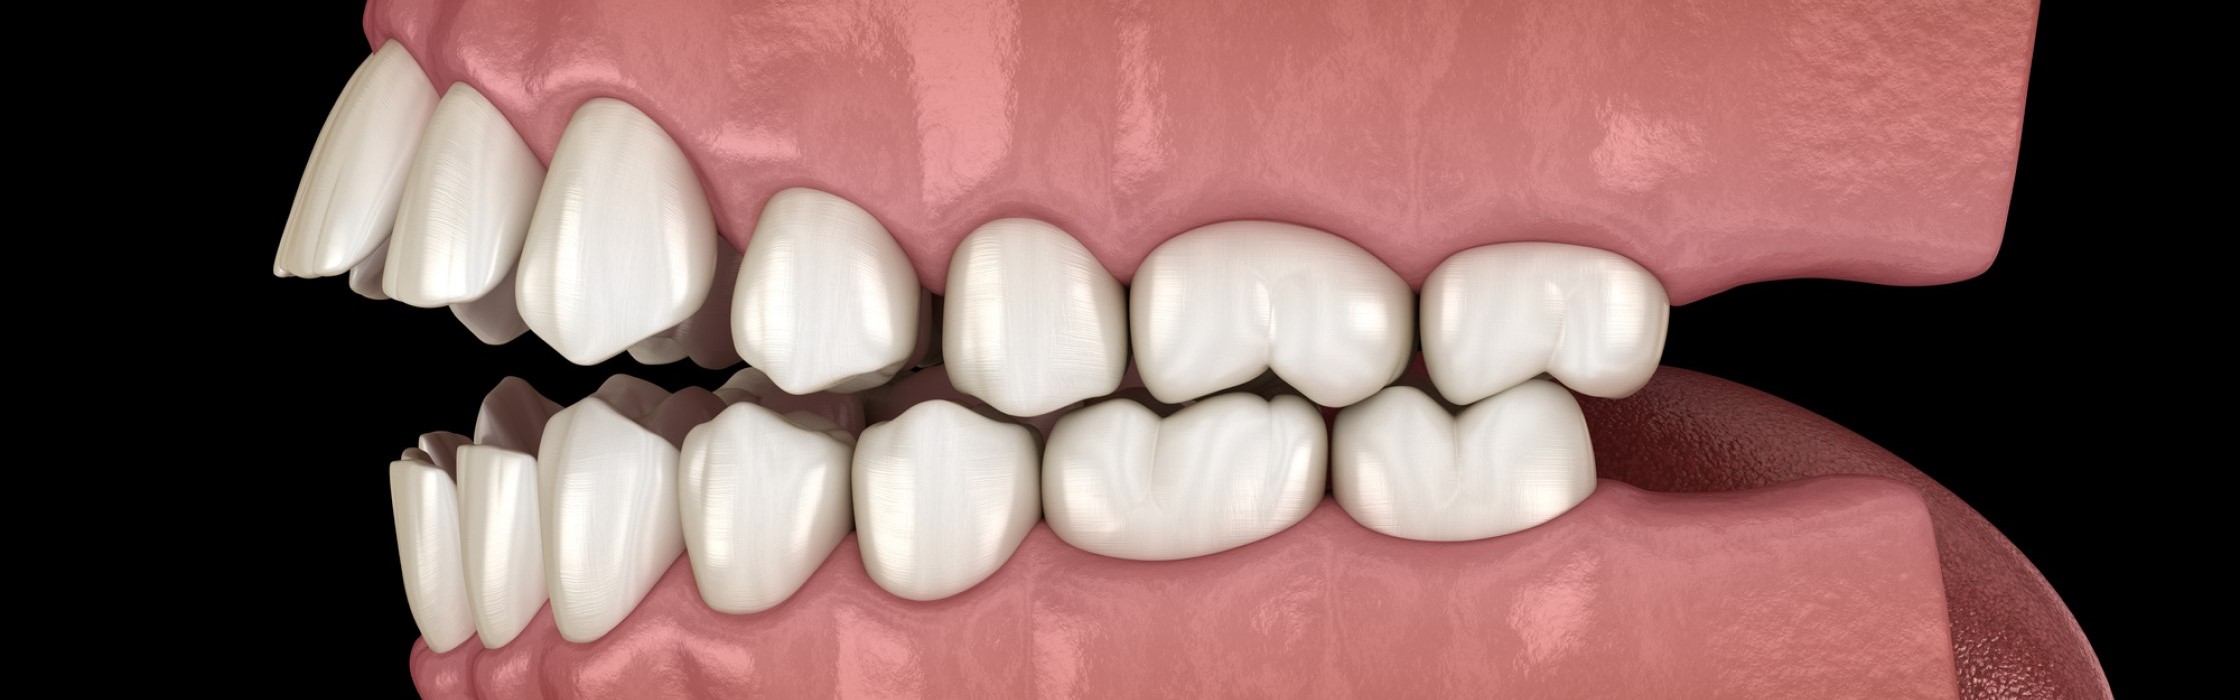 Offener Biss: Fehlstellung von Zähnen und Kiefer